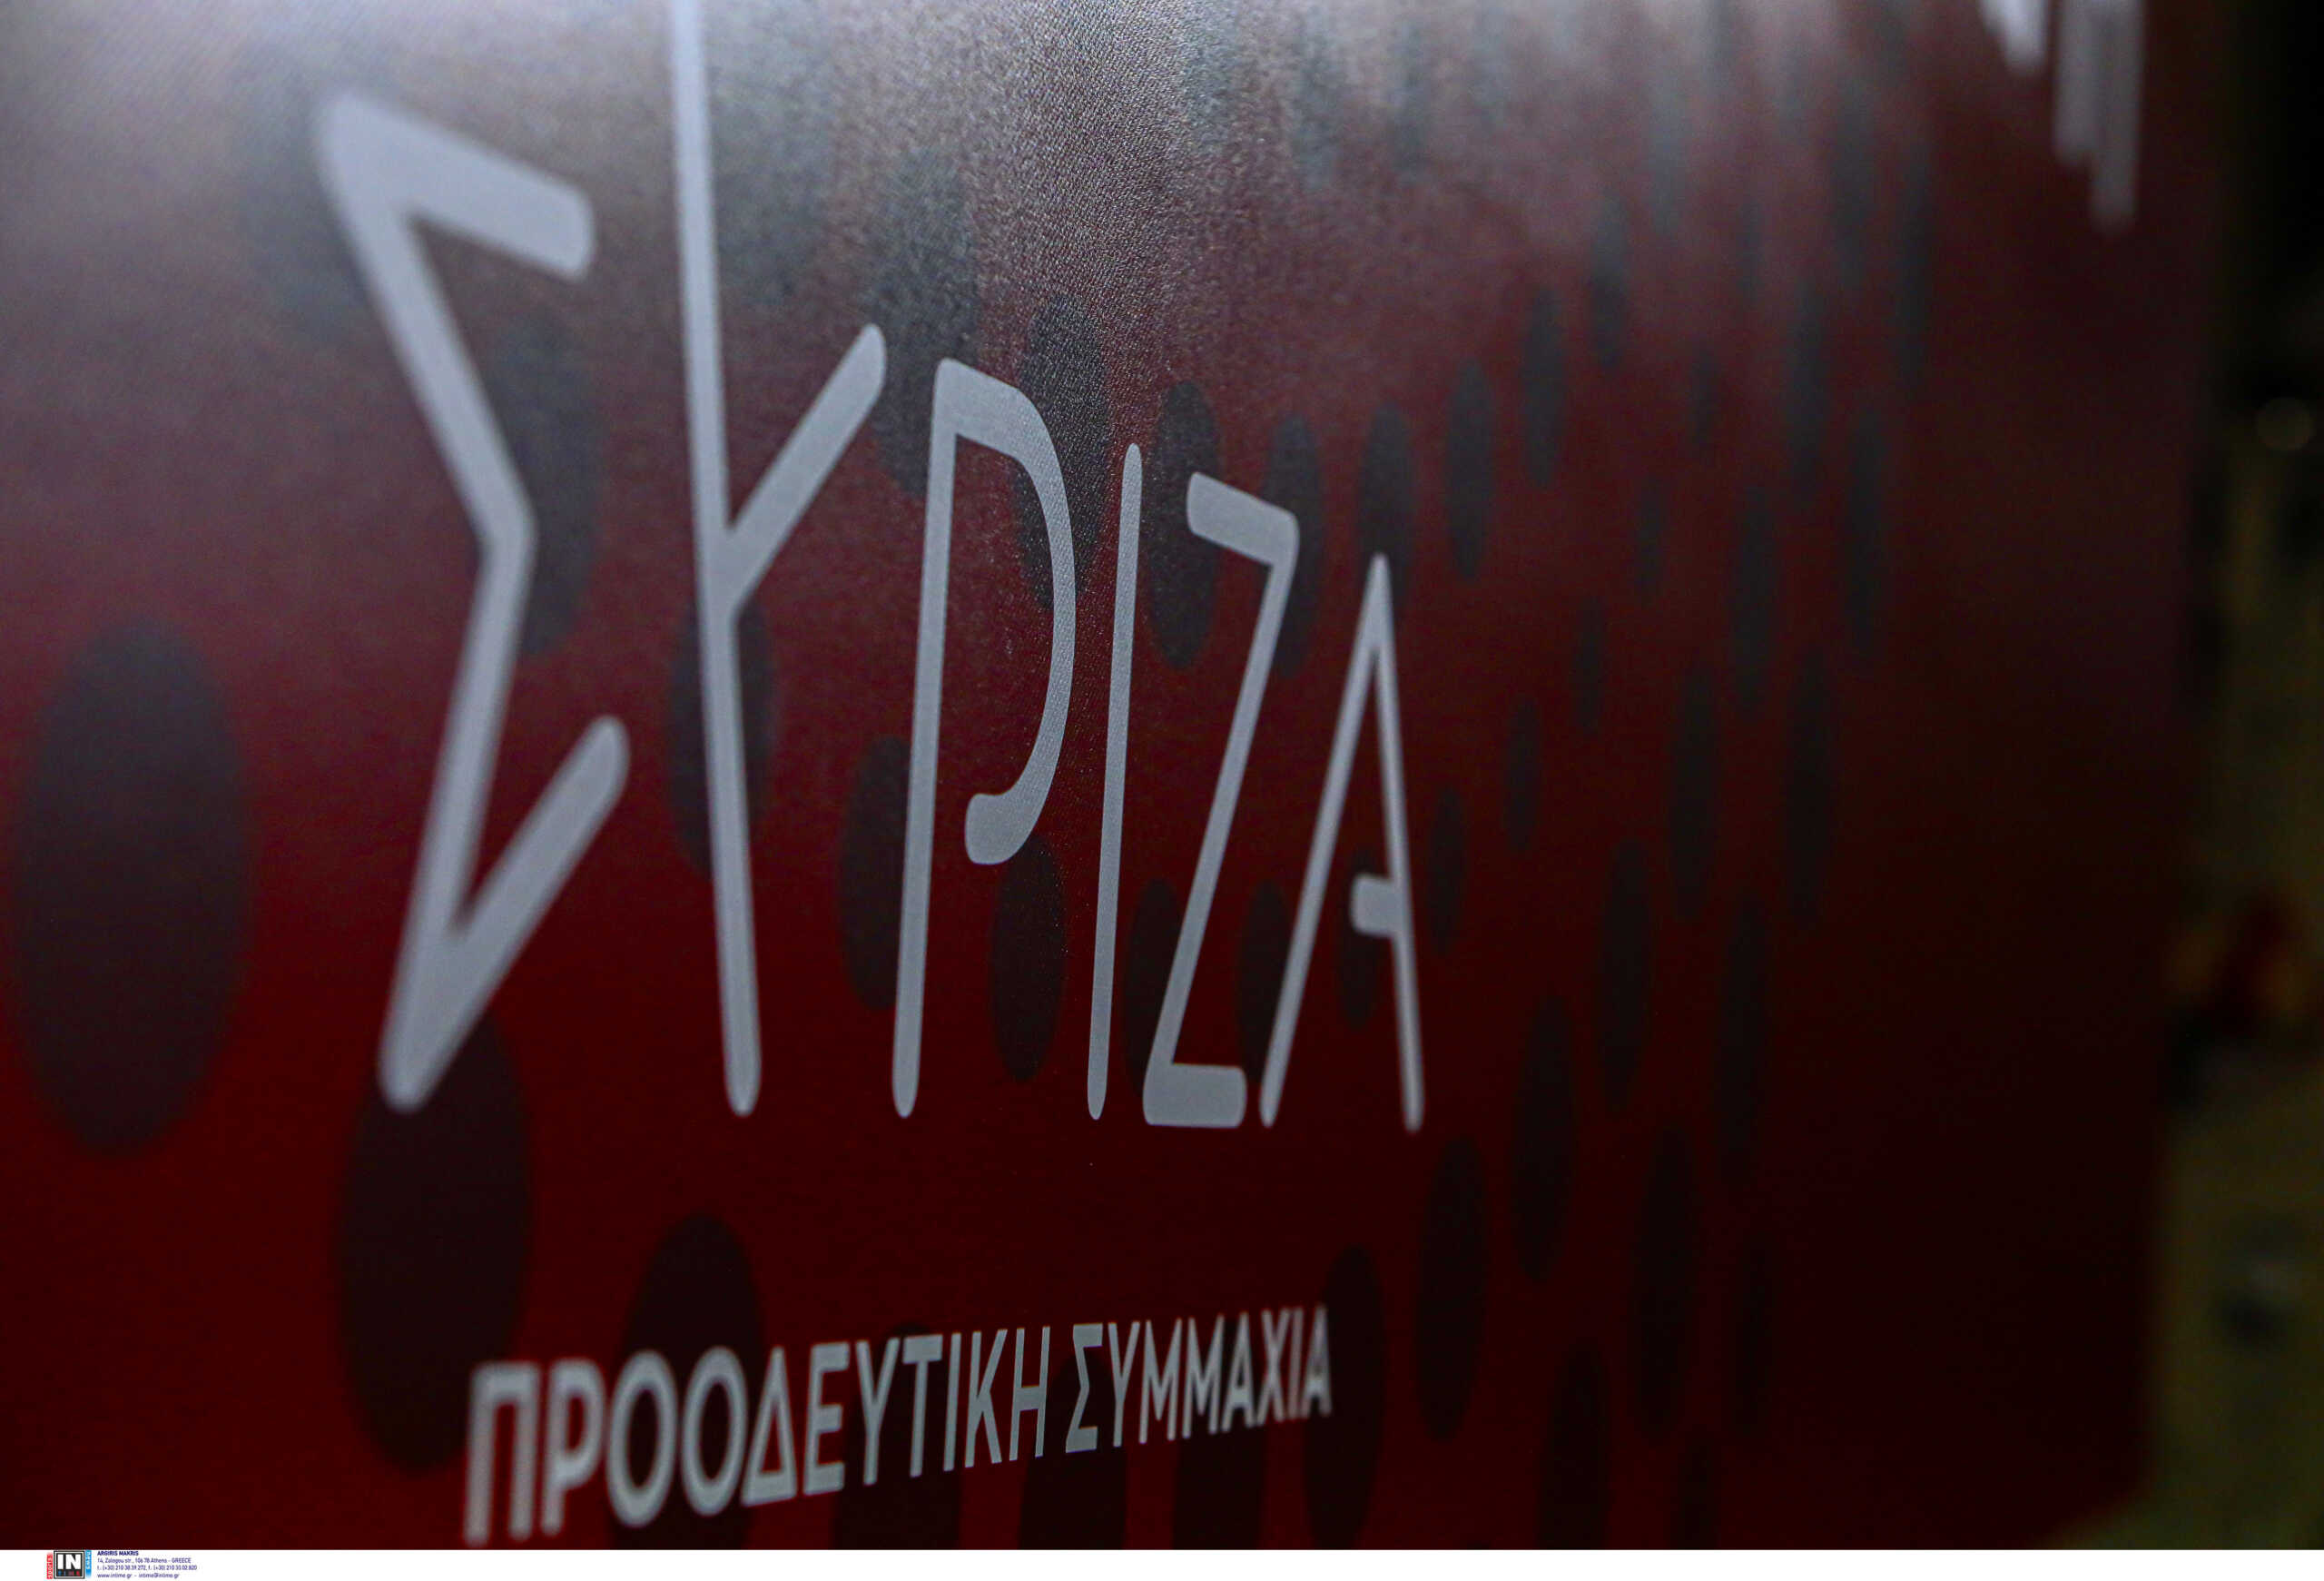 Πυρά ΣΥΡΙΖΑ για τον προϋπολογισμό: Φτωχοποιεί νοικοκυριά και εργαζόμενους, επιδοτεί την αισχροκέρδεια